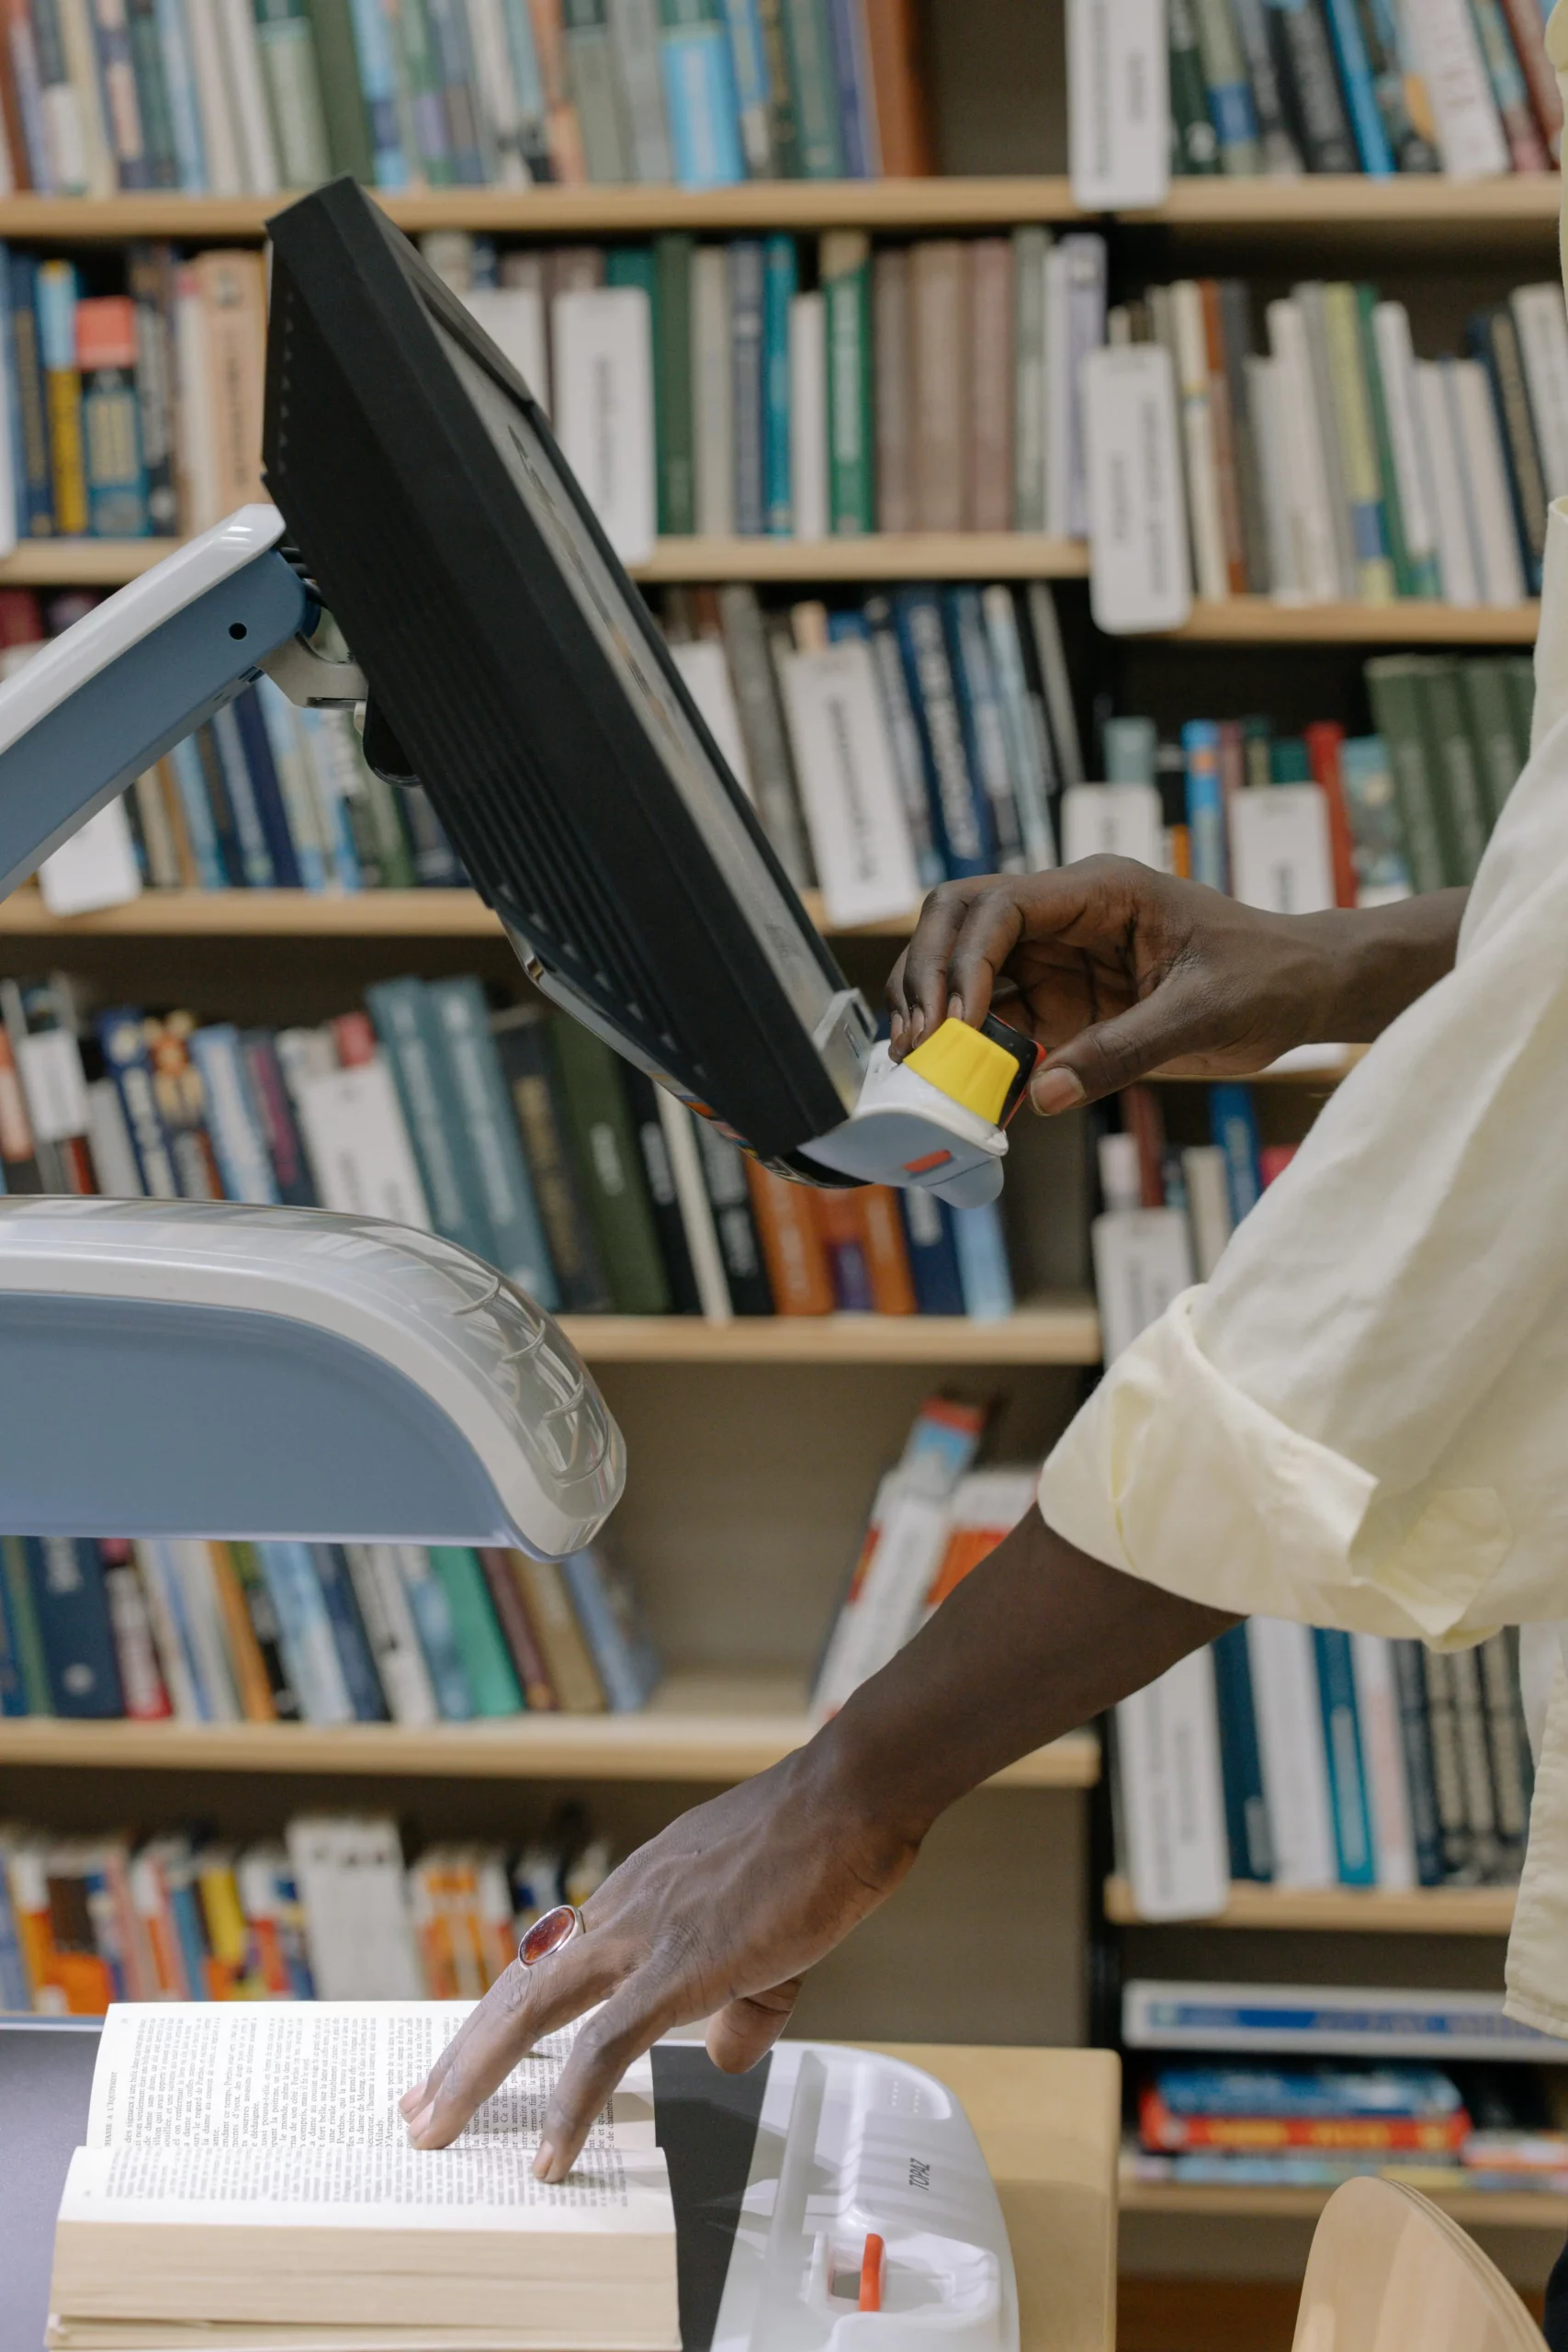 Imagen dentro de una biblioteca que muestra a un hombre buscar información en un monitor, mientras consulta algo en un libro físico